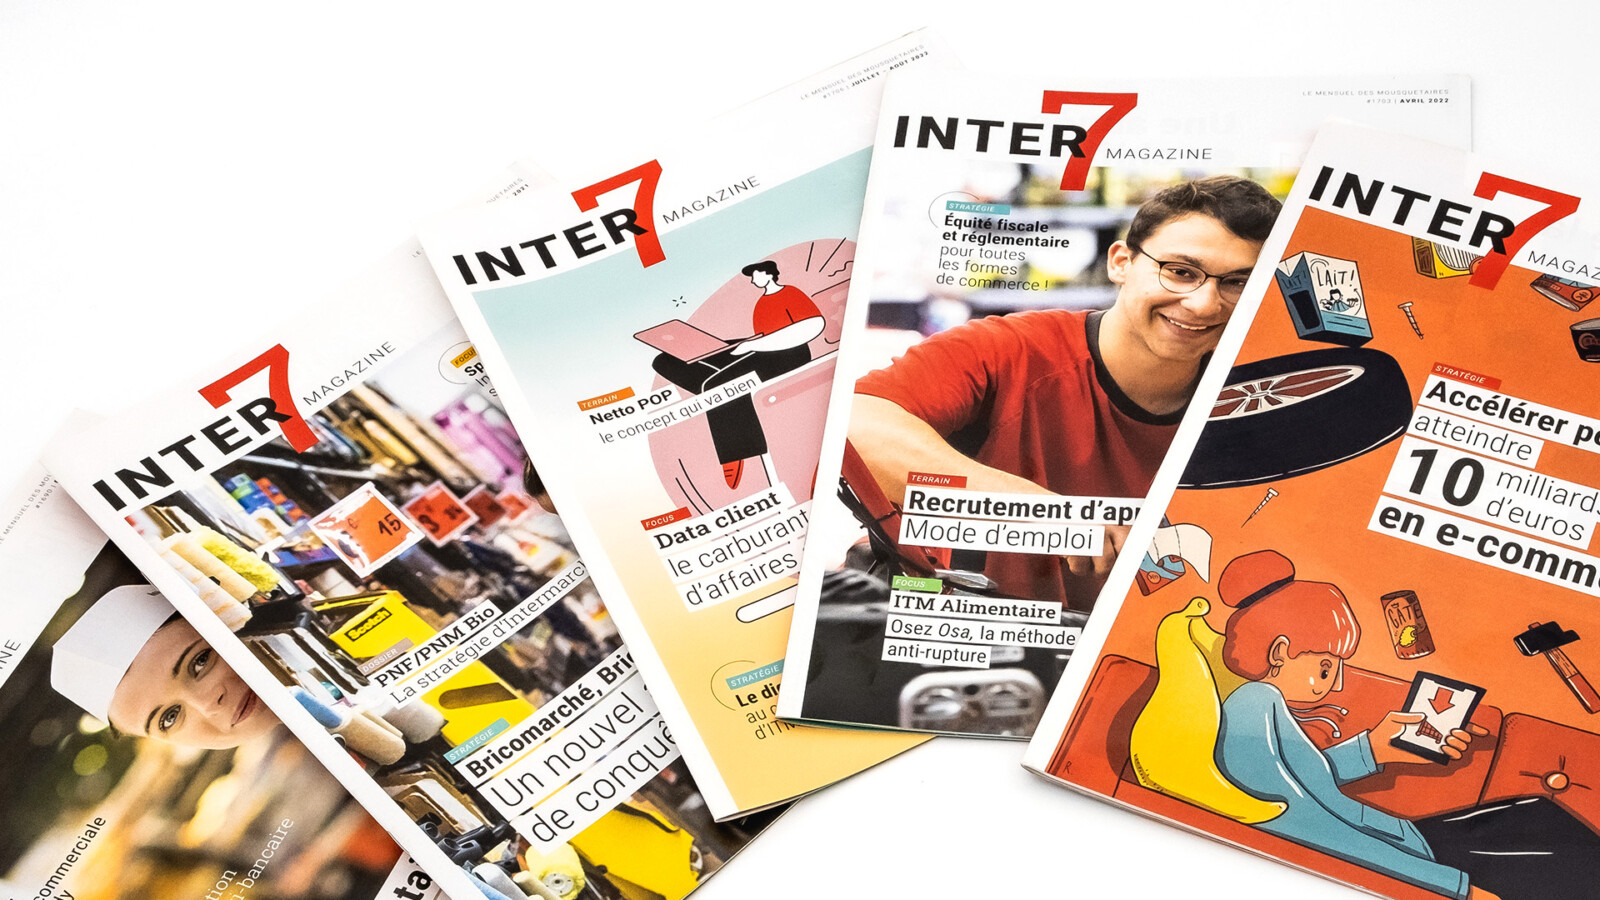 5 magazines Inter7 fermés sur lesquelles figurent le logo, des illustrations et des photographies d'employés